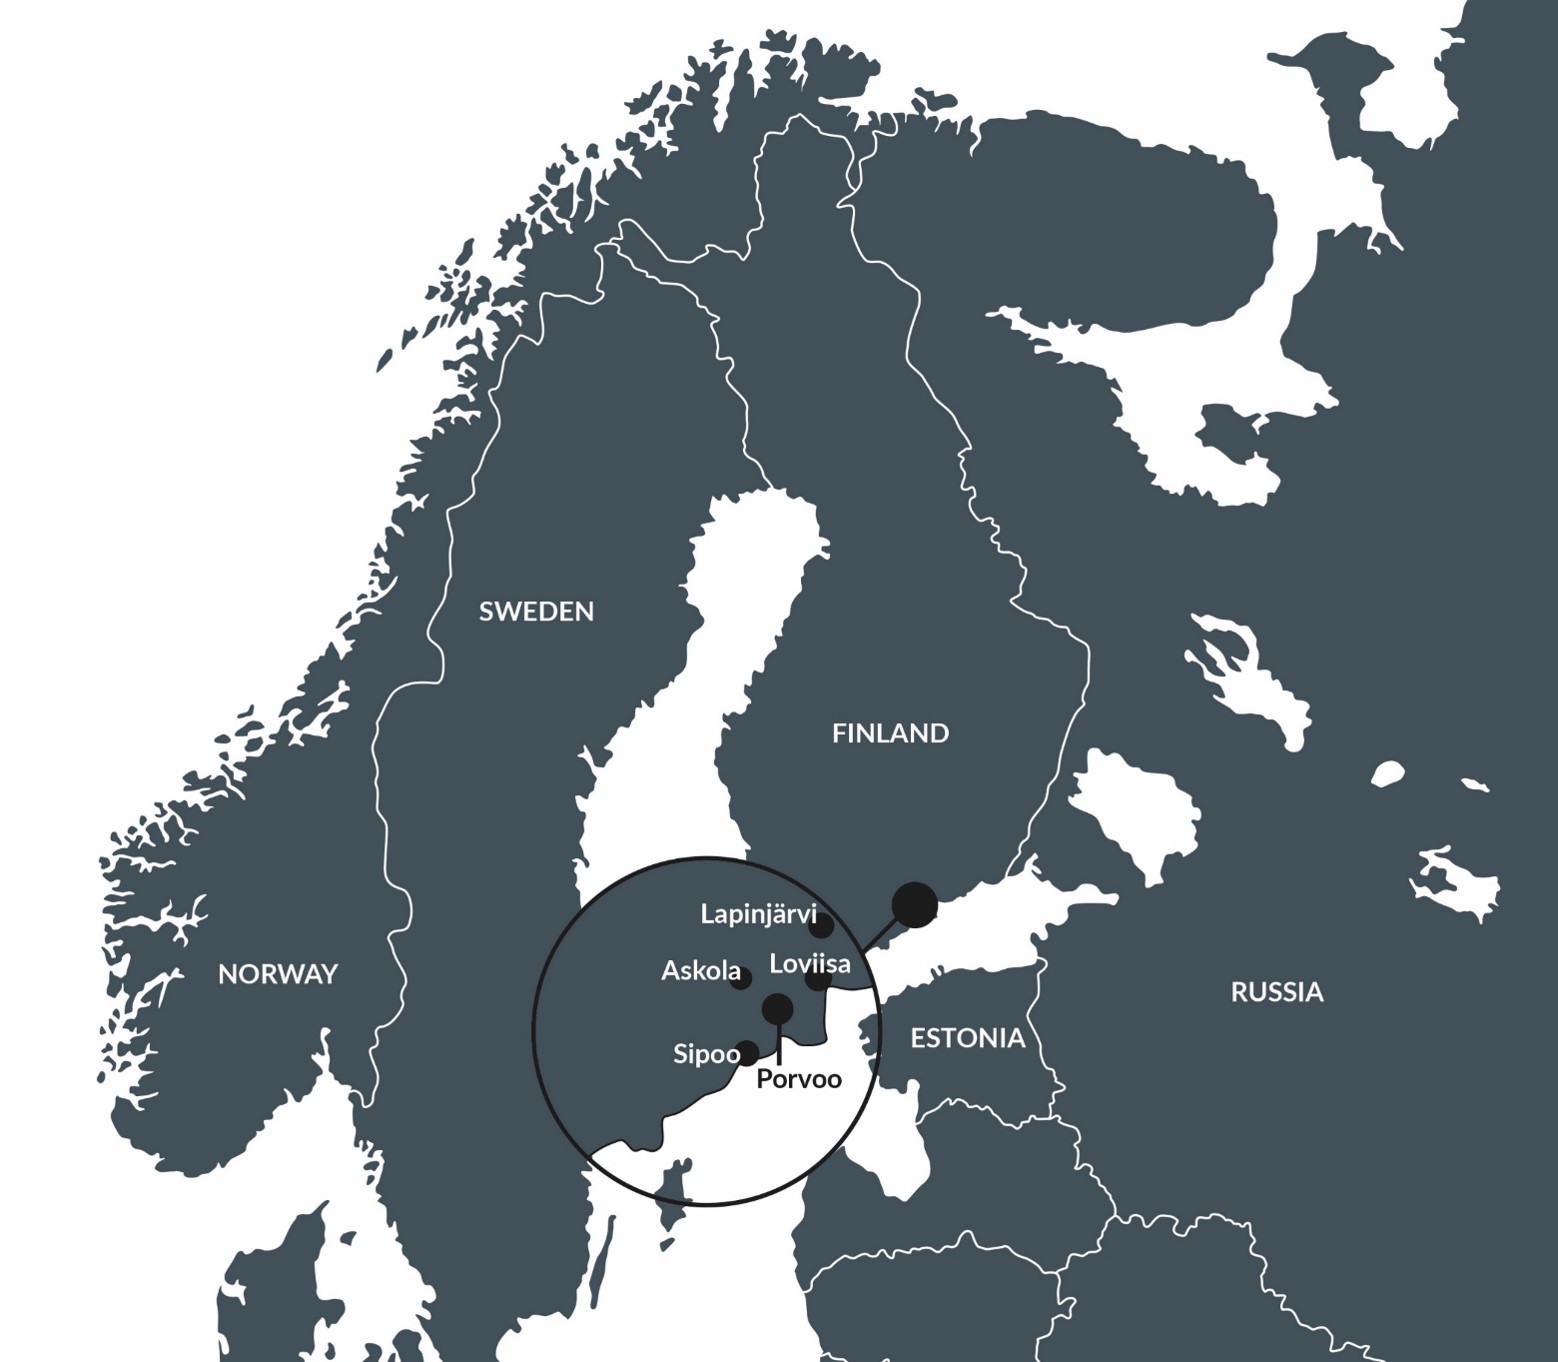 Careeria's owner municipalities: Lapinjärvi, Askola, Loviisa, Sipoo, Porvoo.